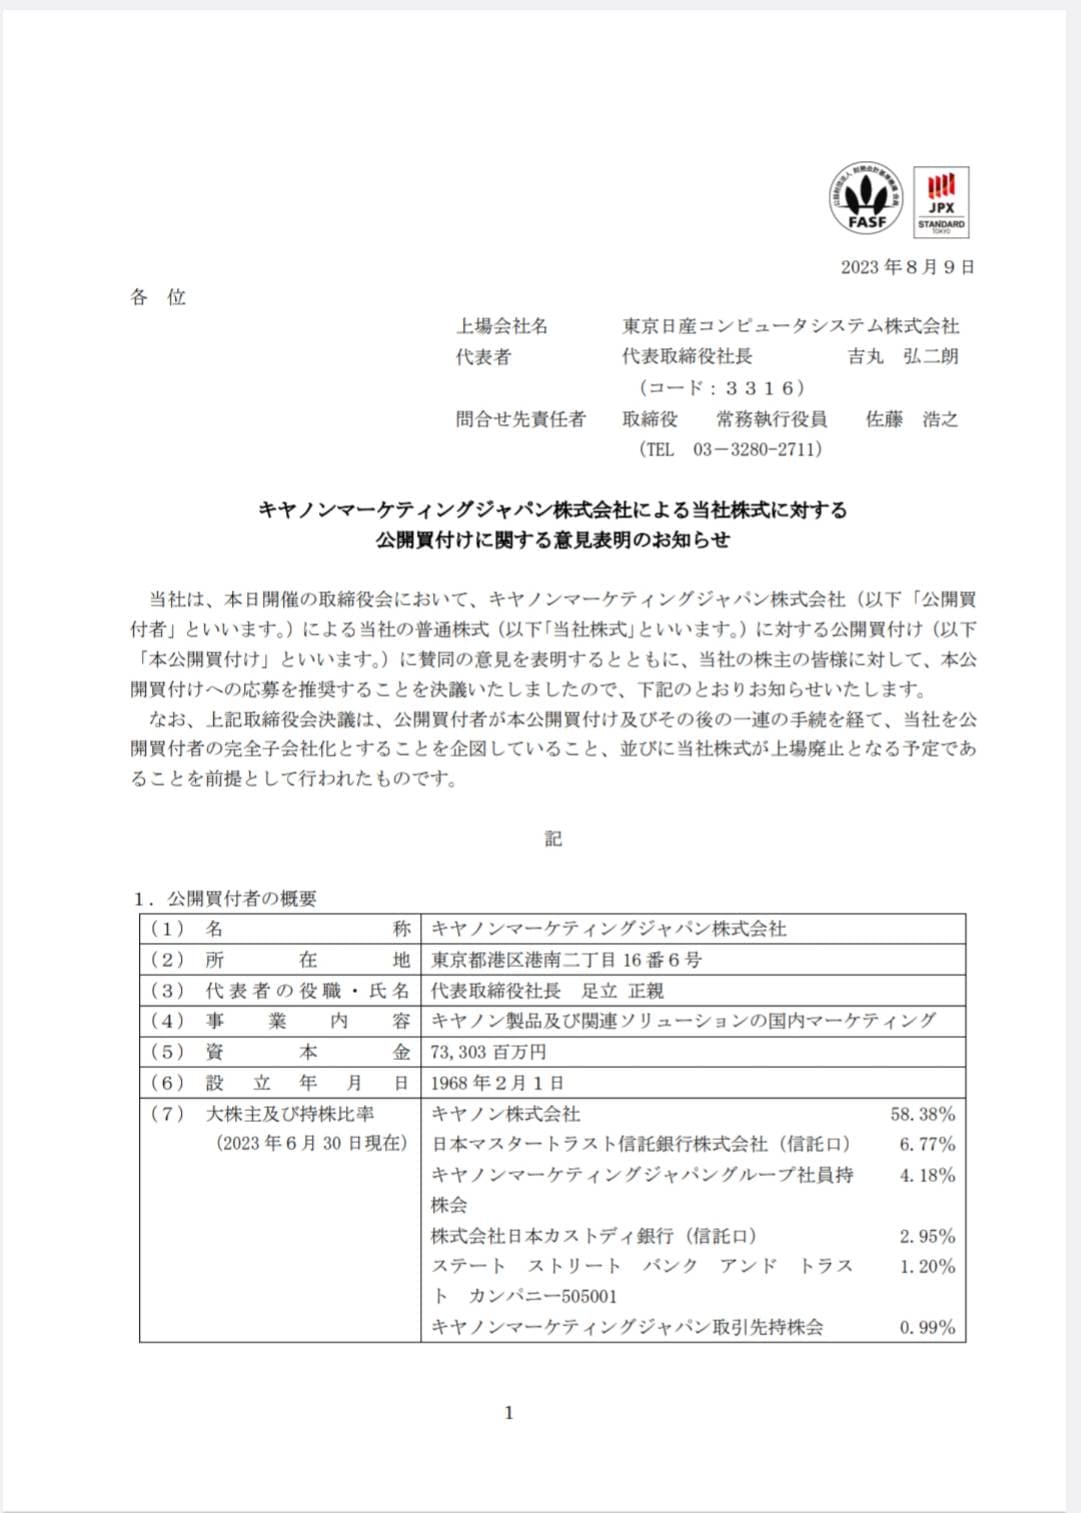 2023年8月9日発表東京日産コンピュータシステム公開買い付けに関するお知らせ1